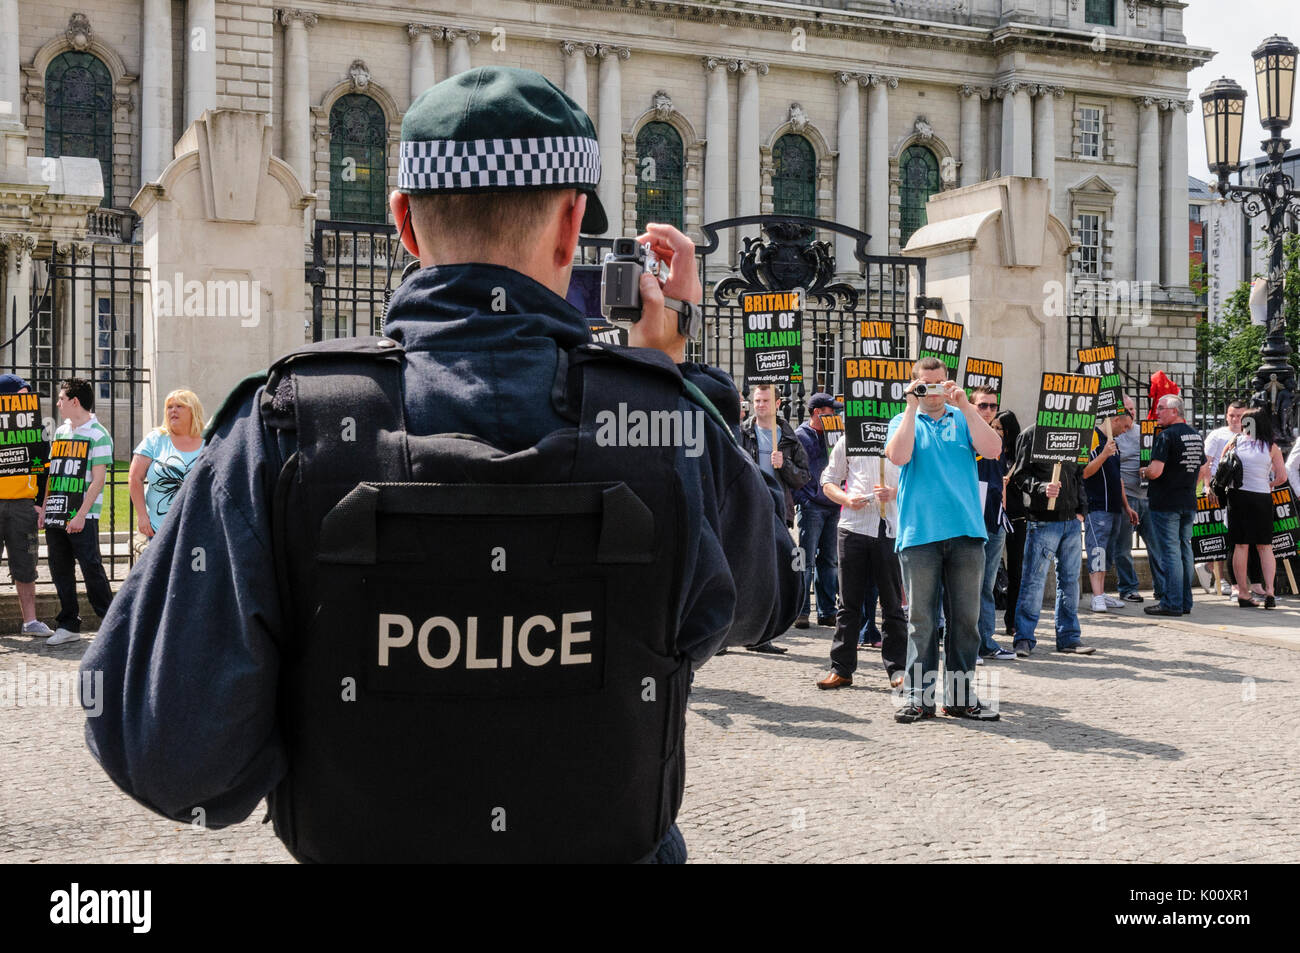 26 giugno 2010, Belfast. Gli ufficiali di polizia video e fotografia Eirigi membri durante una dimostrazione. Foto Stock